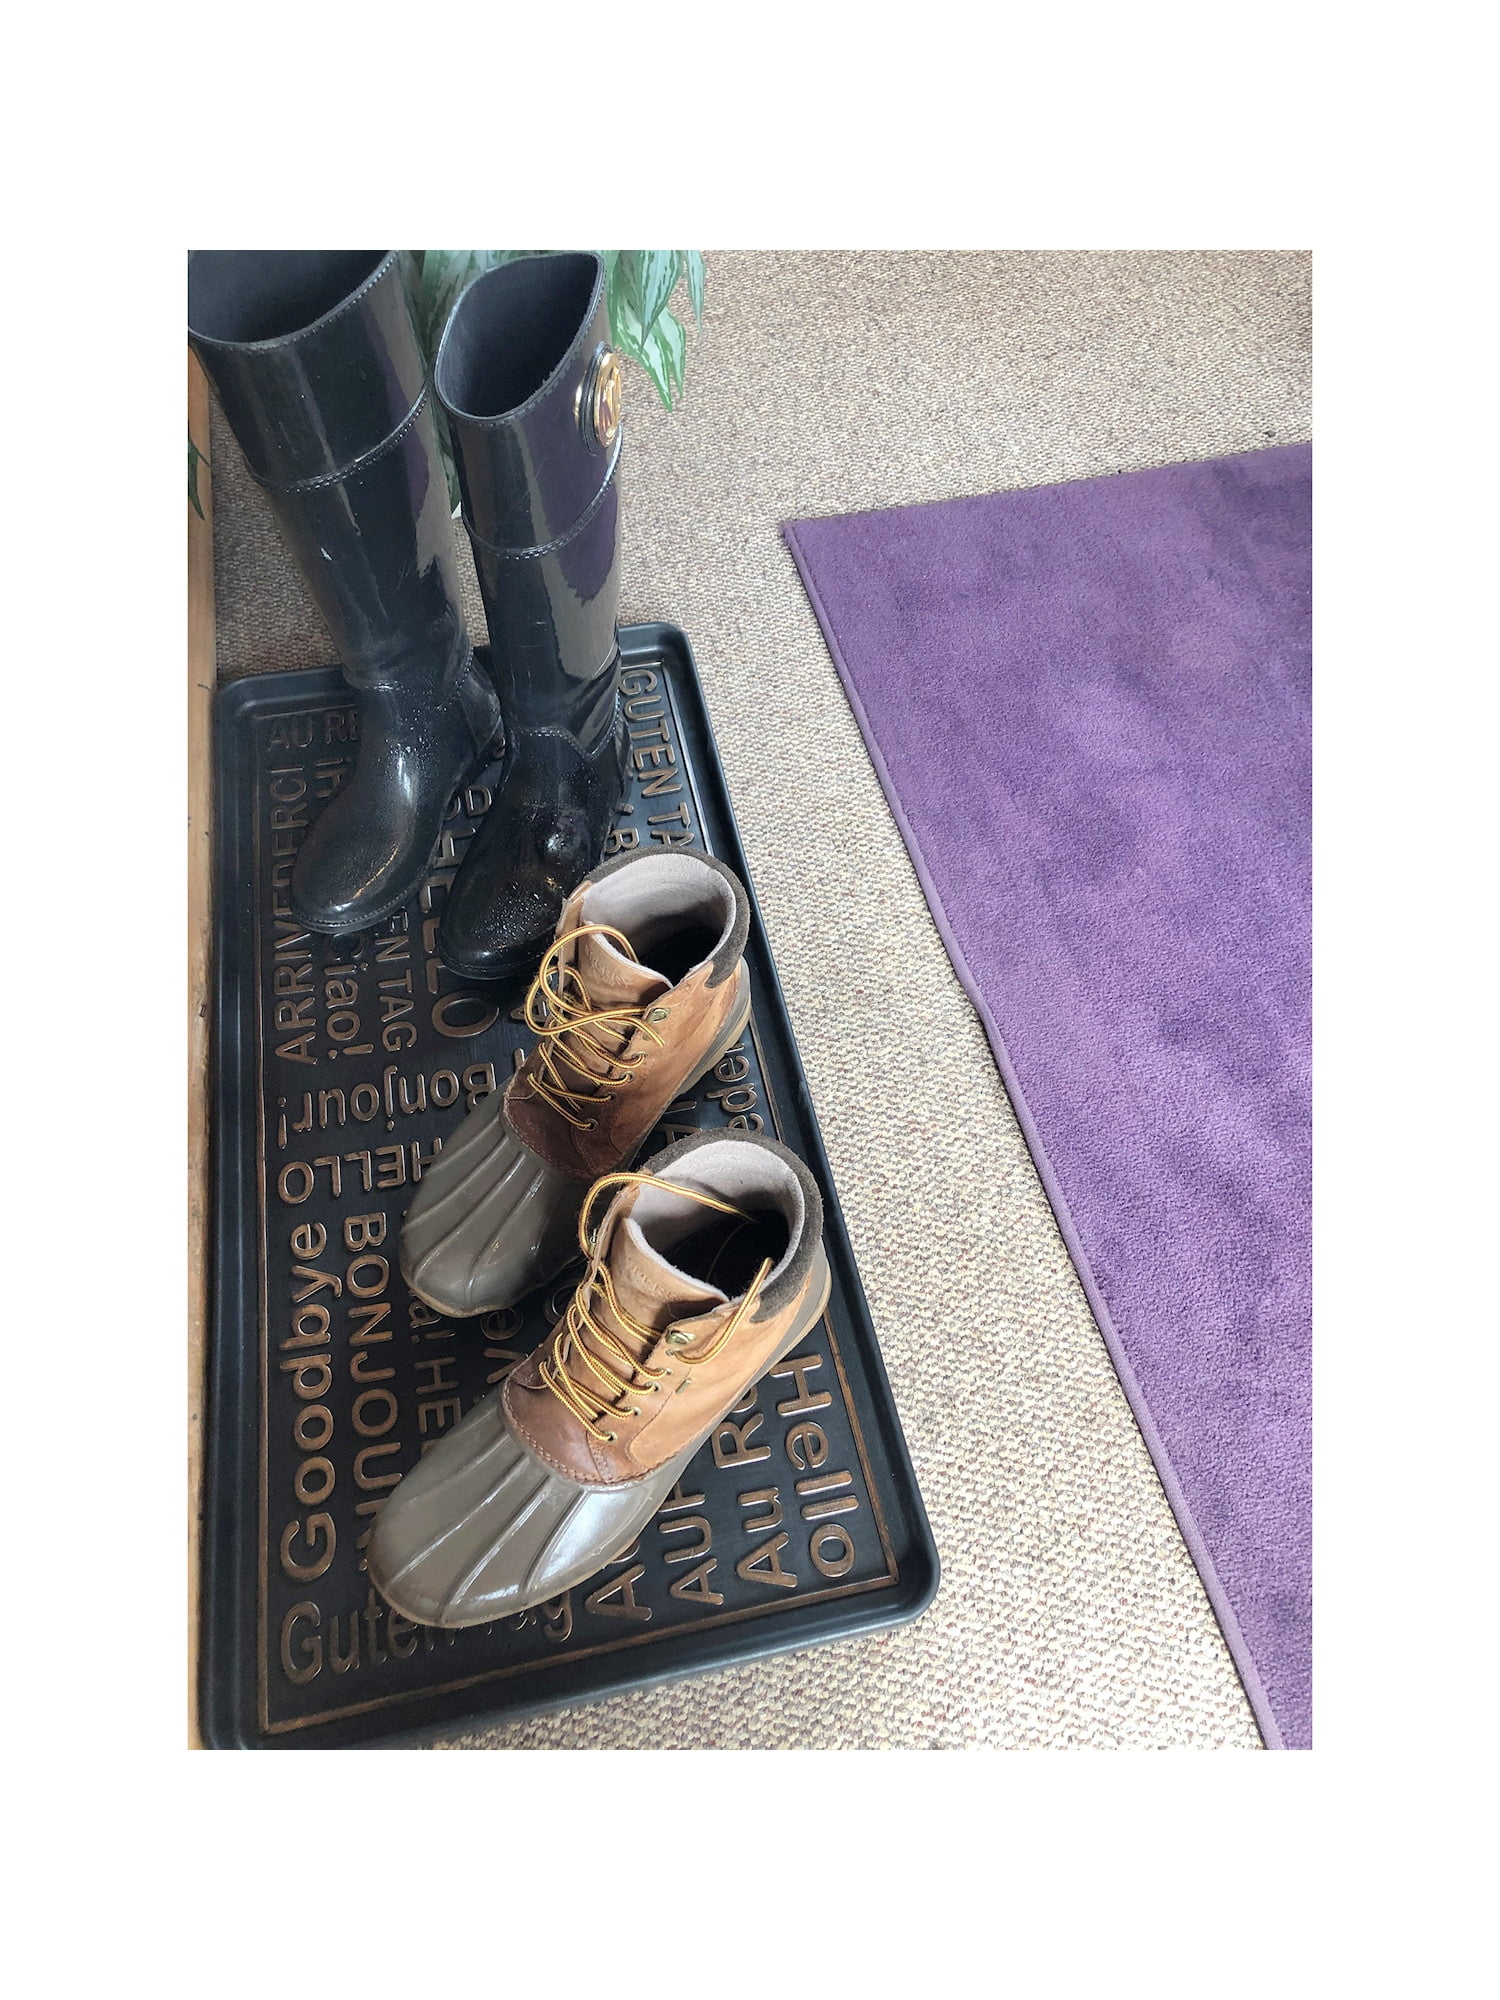 SafetyCare Rubber Shoe & Boot Tray - Multi-Purpose - 80 cm x 40 cm